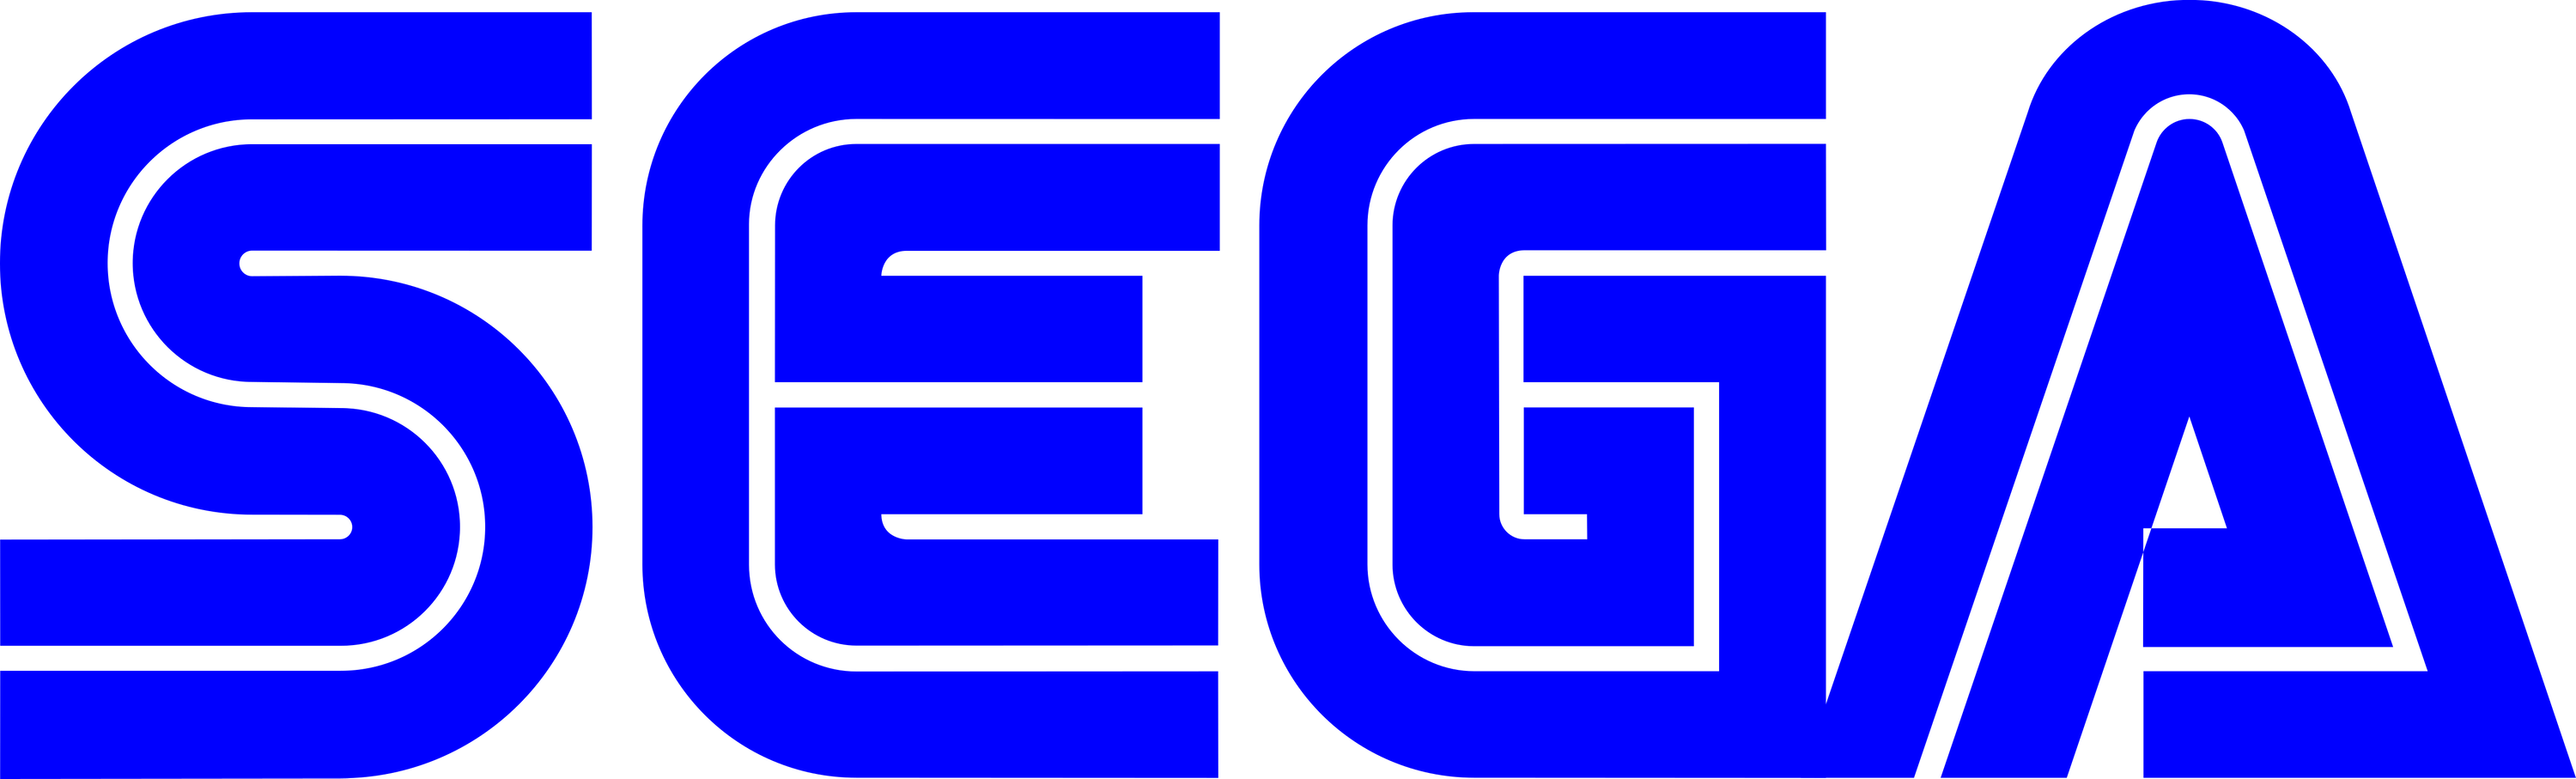 Sega logo blu 1975